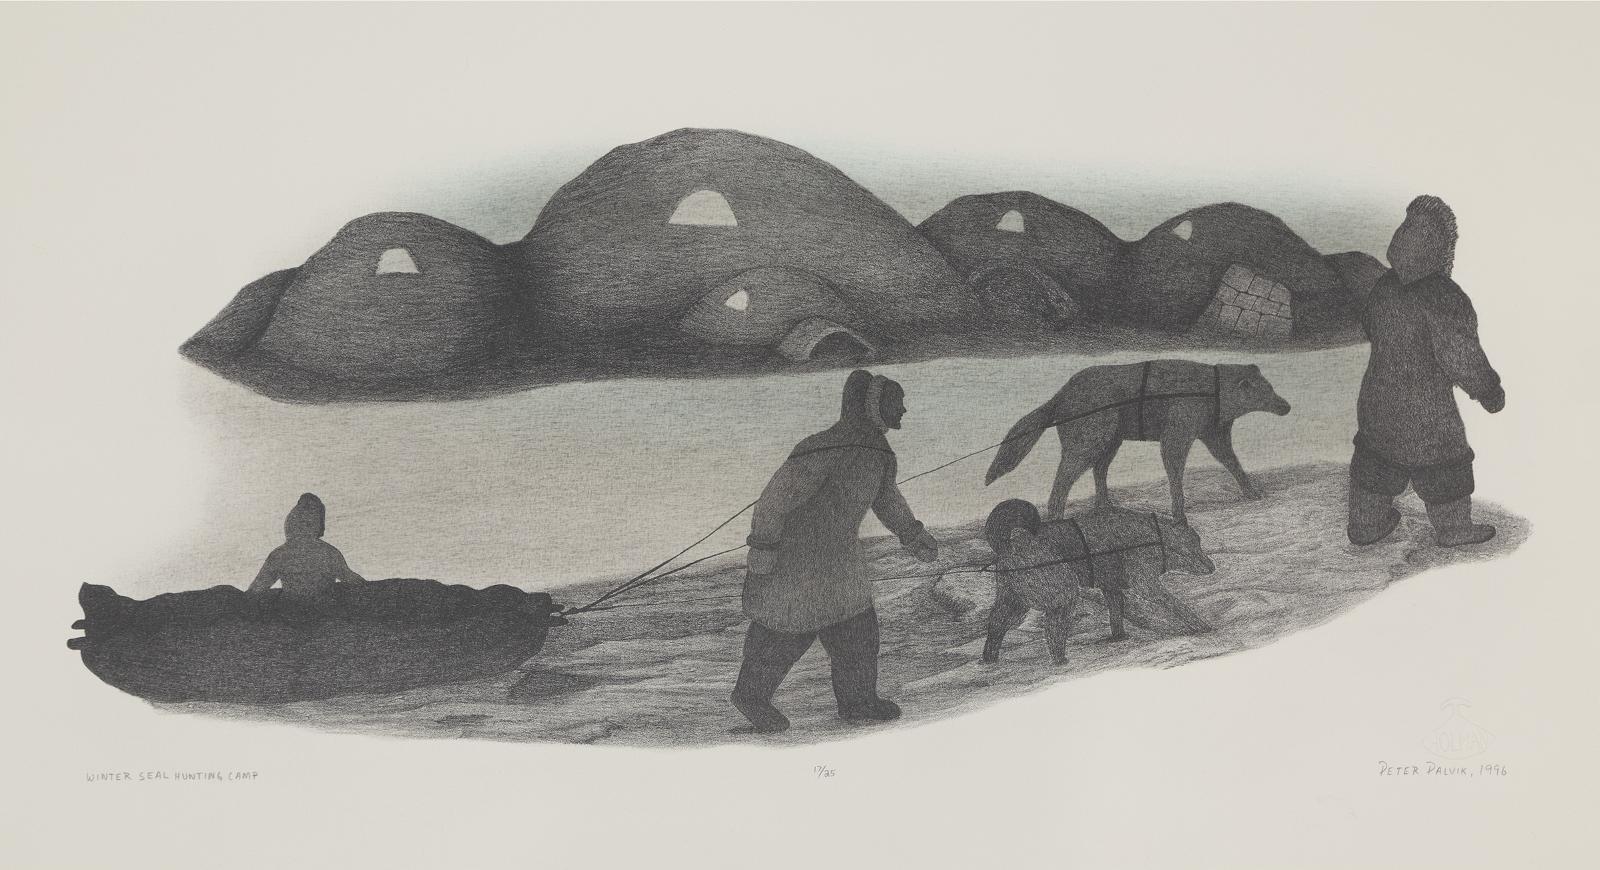 Peter Palvik (1960) - Three Works; Inukshuks, Lone Wolf, Winter Seal Hunting Camp